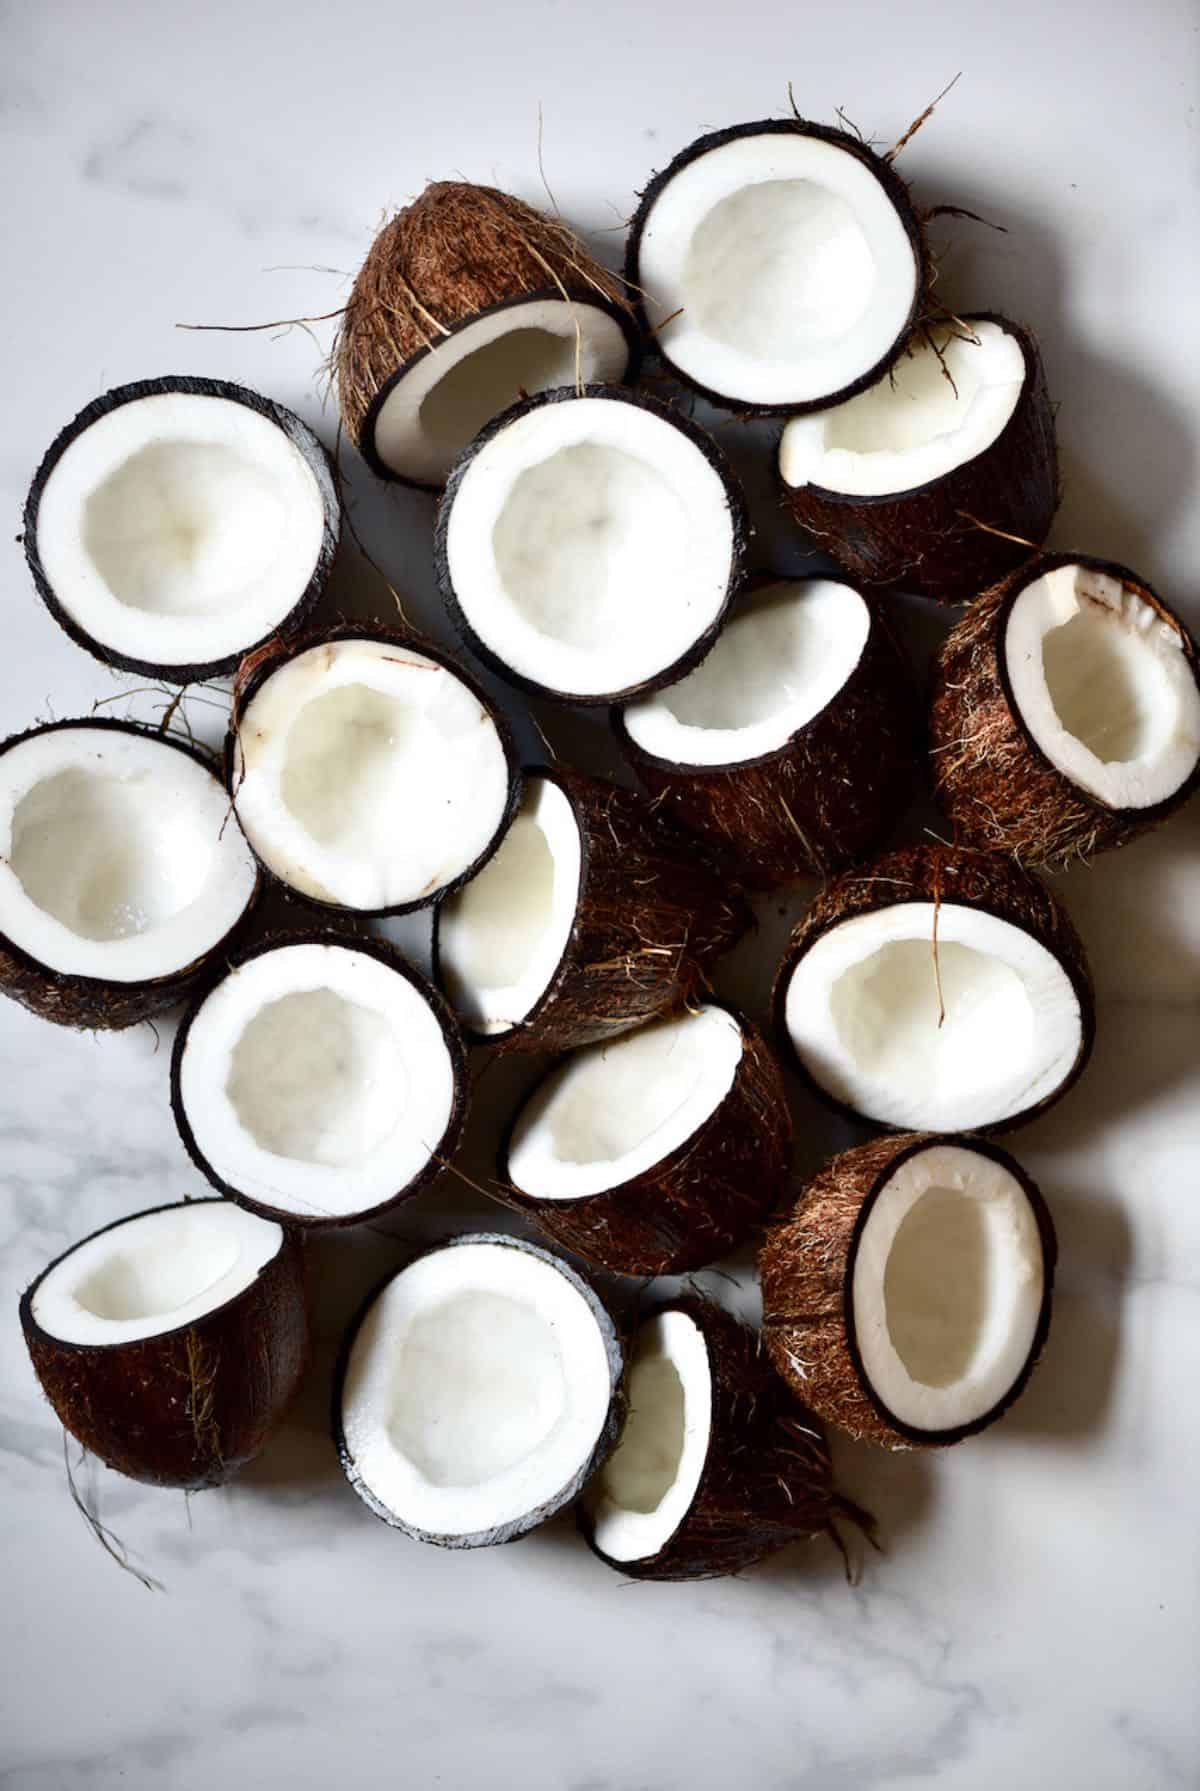 17 halves of coconuts